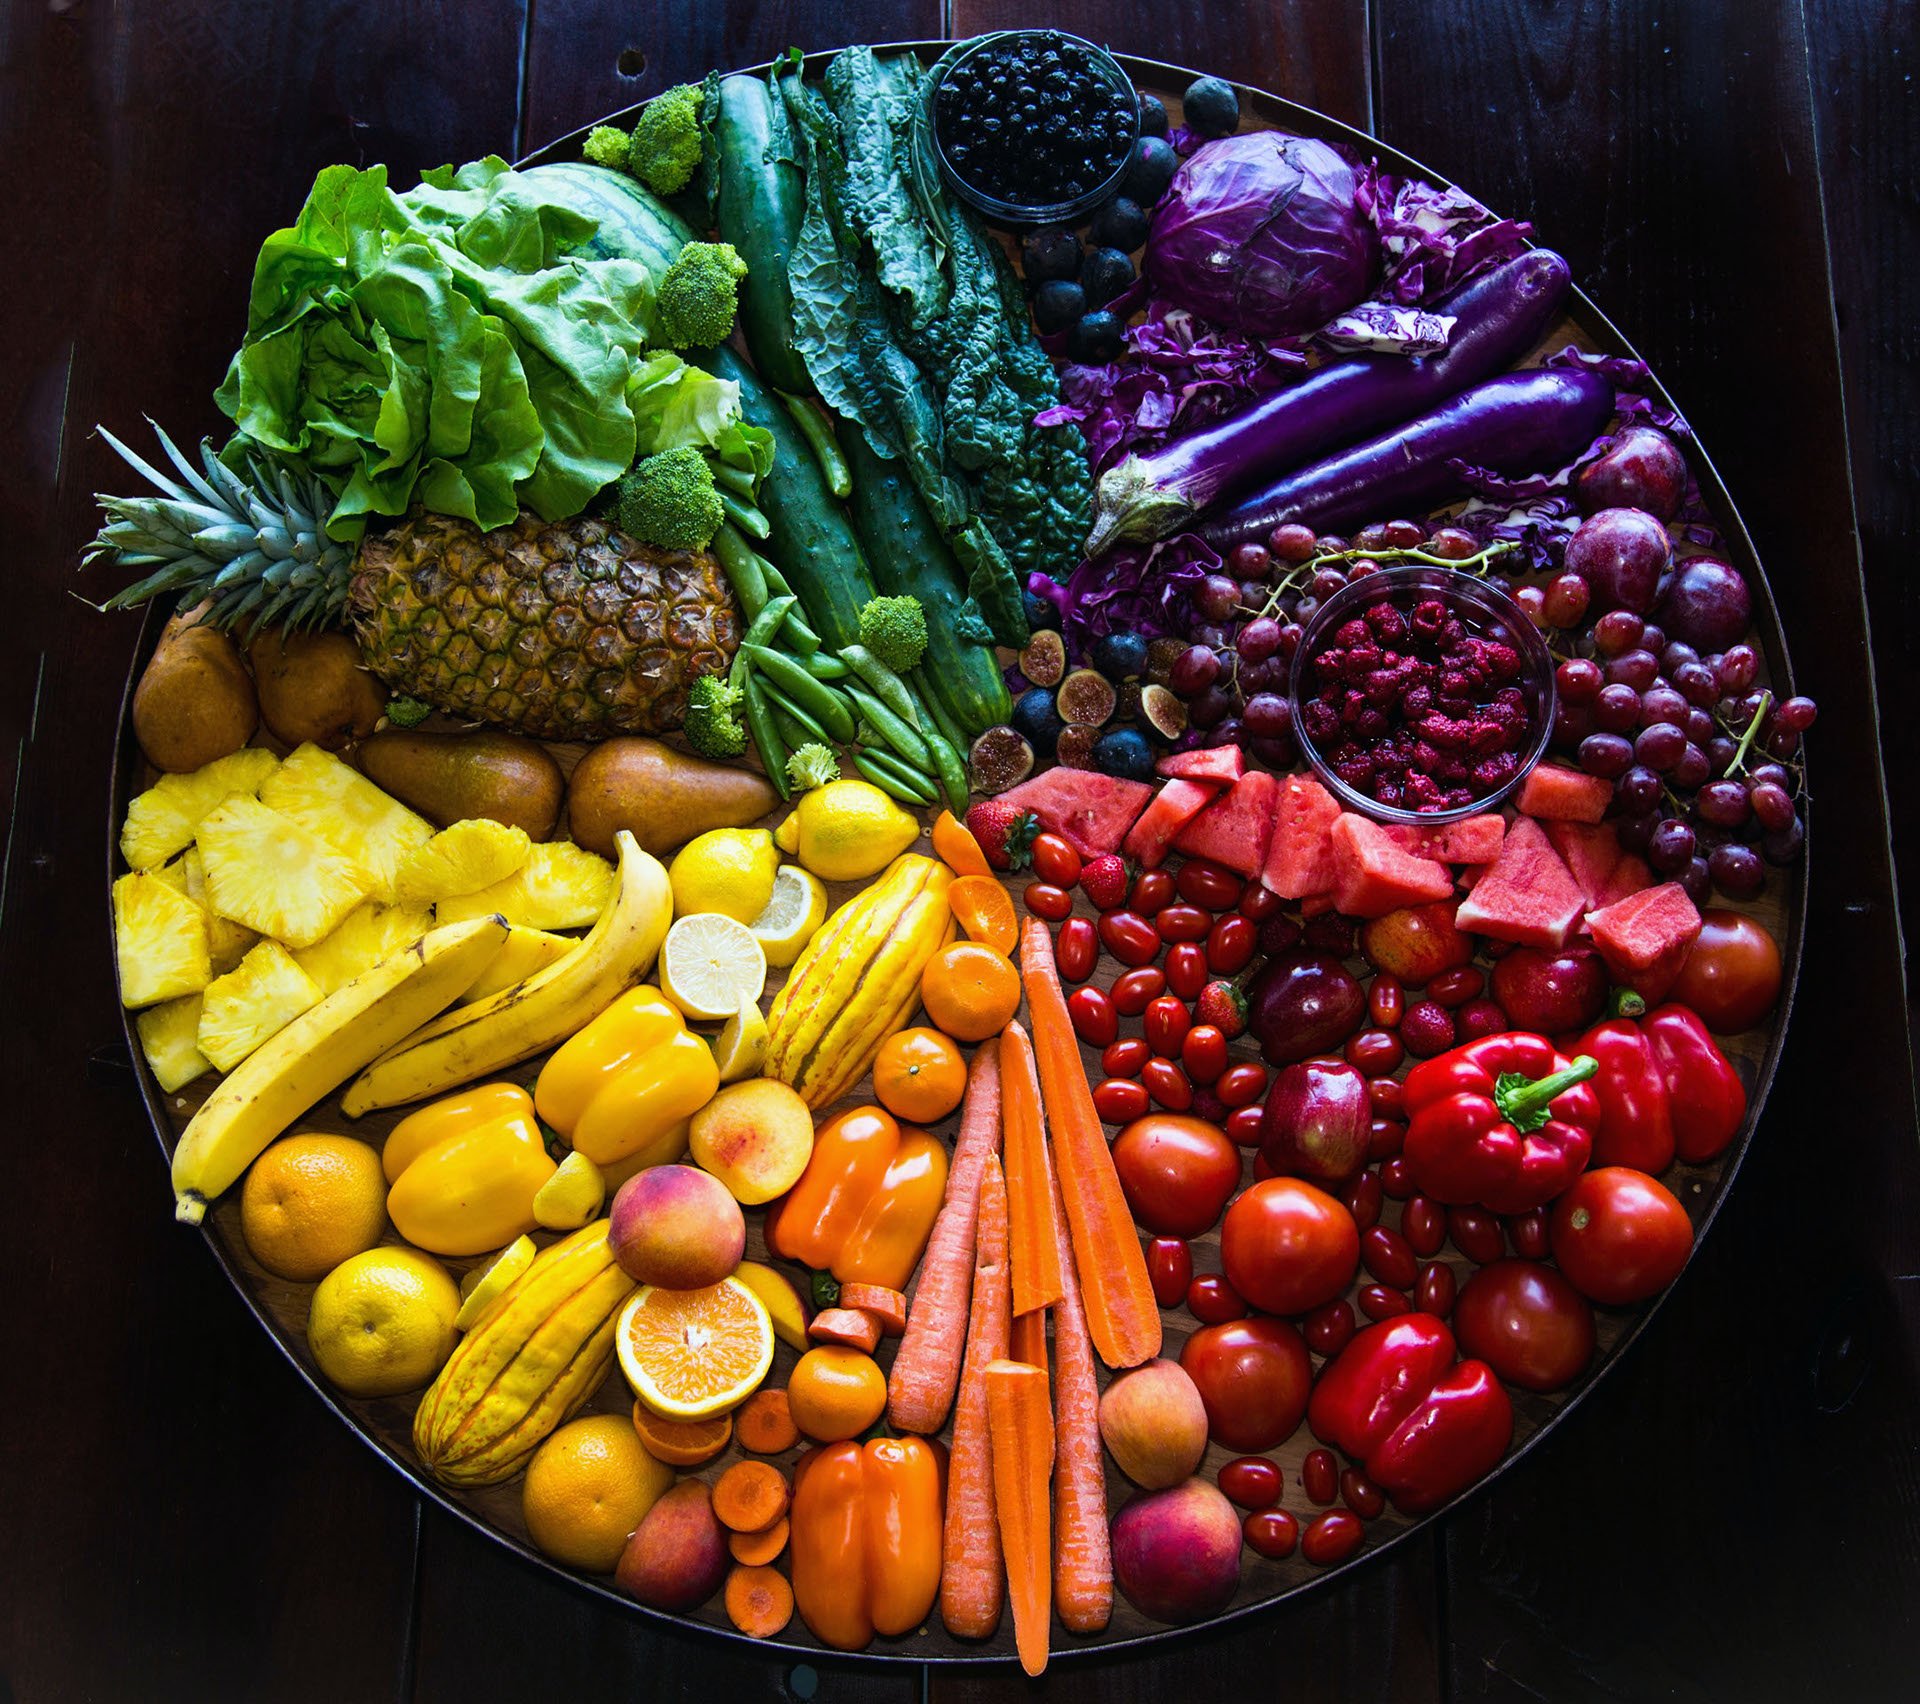 Colourful and crunchy fruit and vegetables can. Овощи и фрукты. Яркие овощи. Разноцветные овощи. Овощи, фрукты, ягоды.